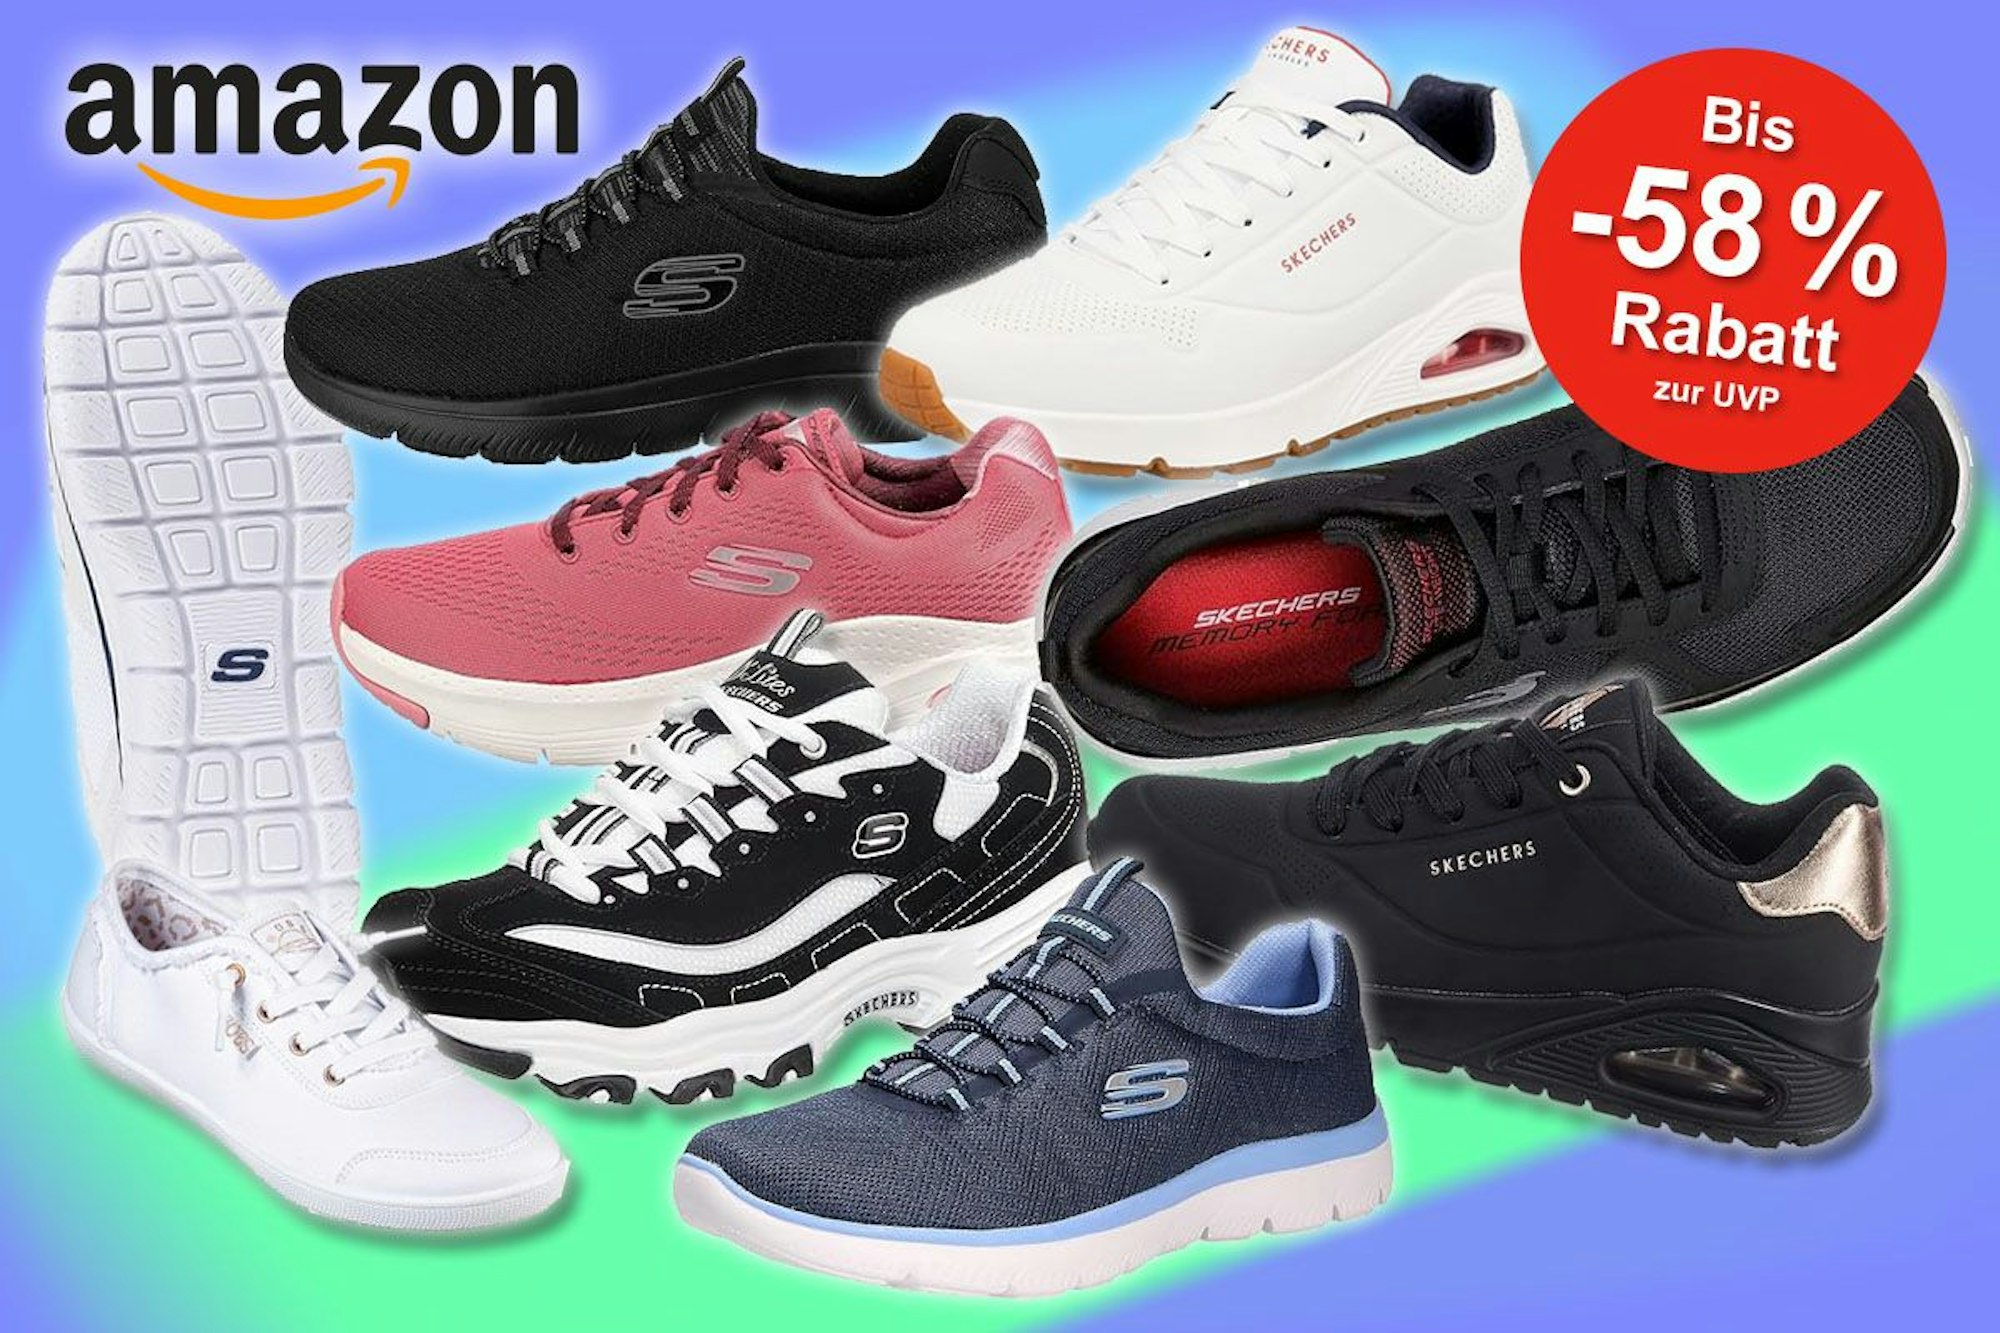 Skechers Sneaker Modelle aus der Amazon Bestseller Liste Sneaker für Herren und Damen vor buntem Hintergrund.